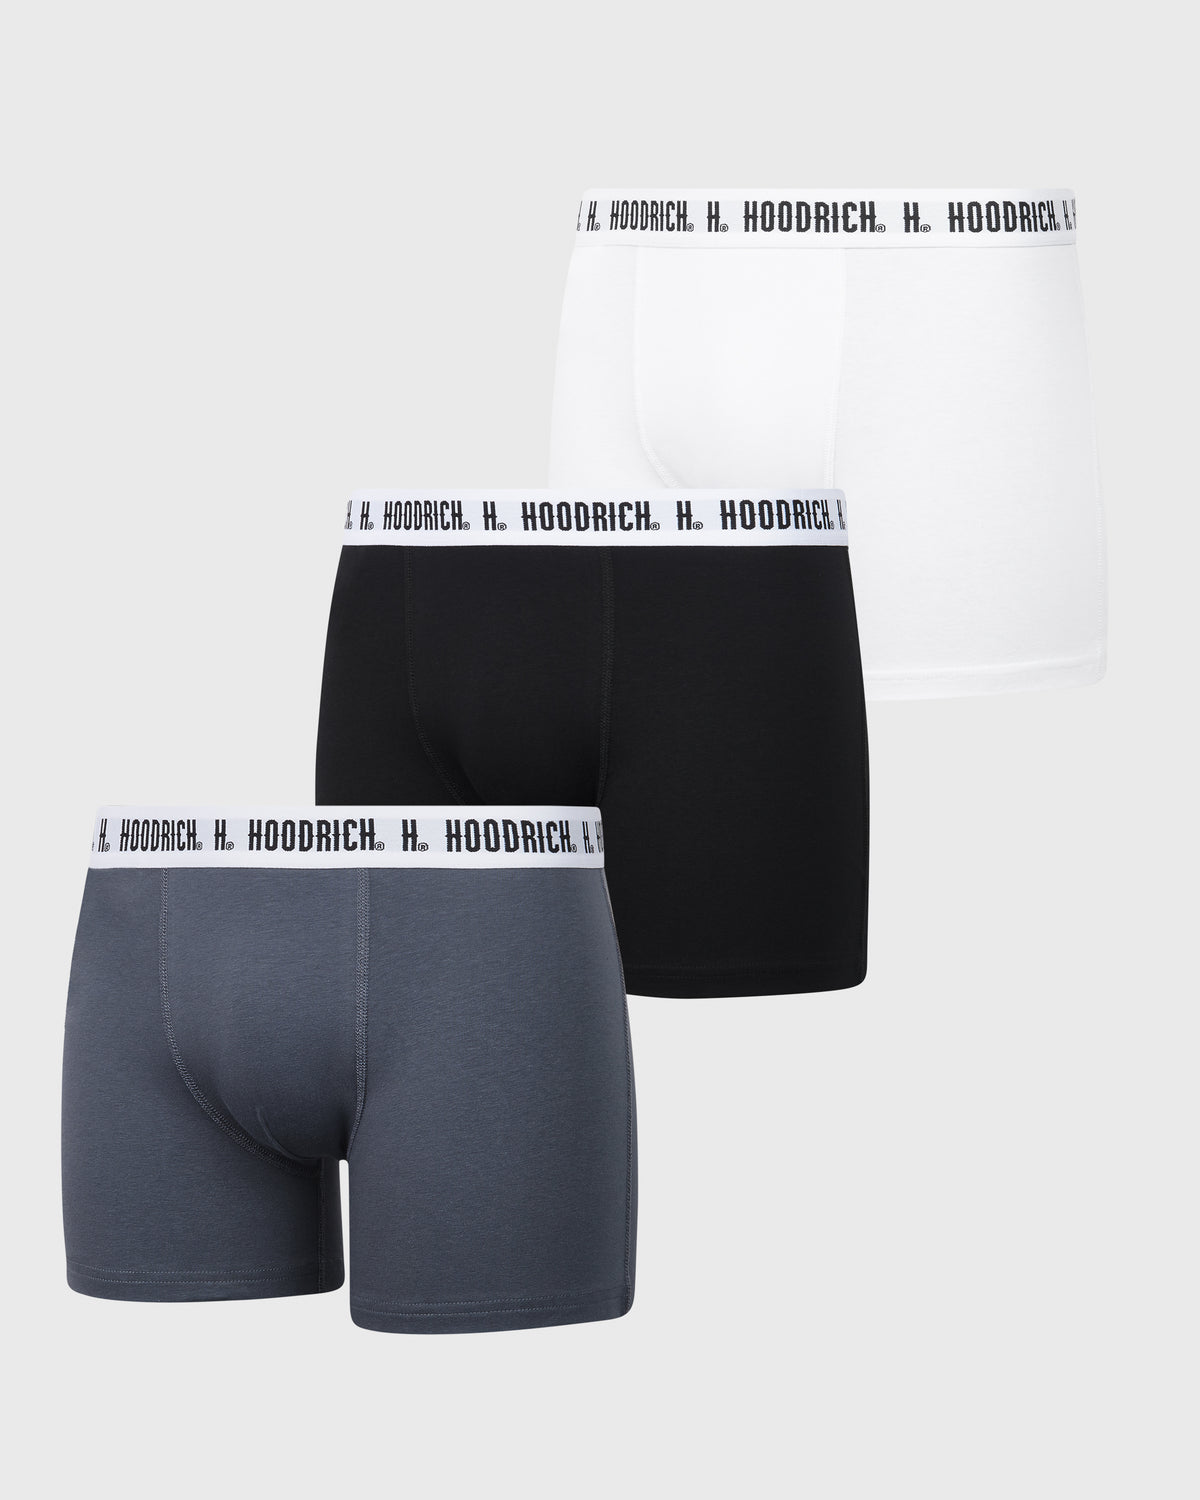 Men's and women's underwear